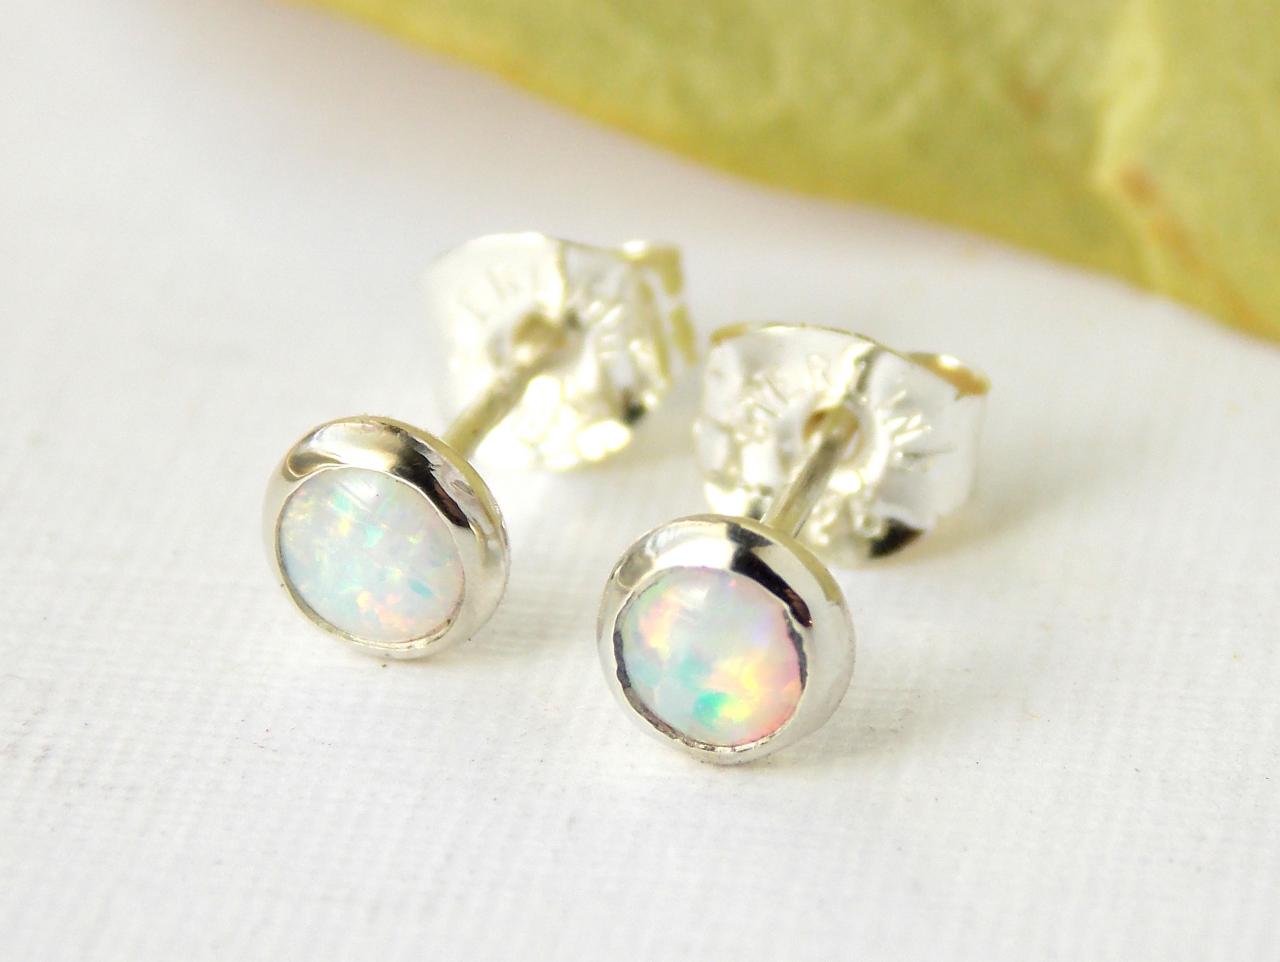 Opal Stud Earrings- Opal Earrings, October Birthstone, Post Earrings, Simple Earrings, Stud Earrings, Dainty Earrings, Small Earrings